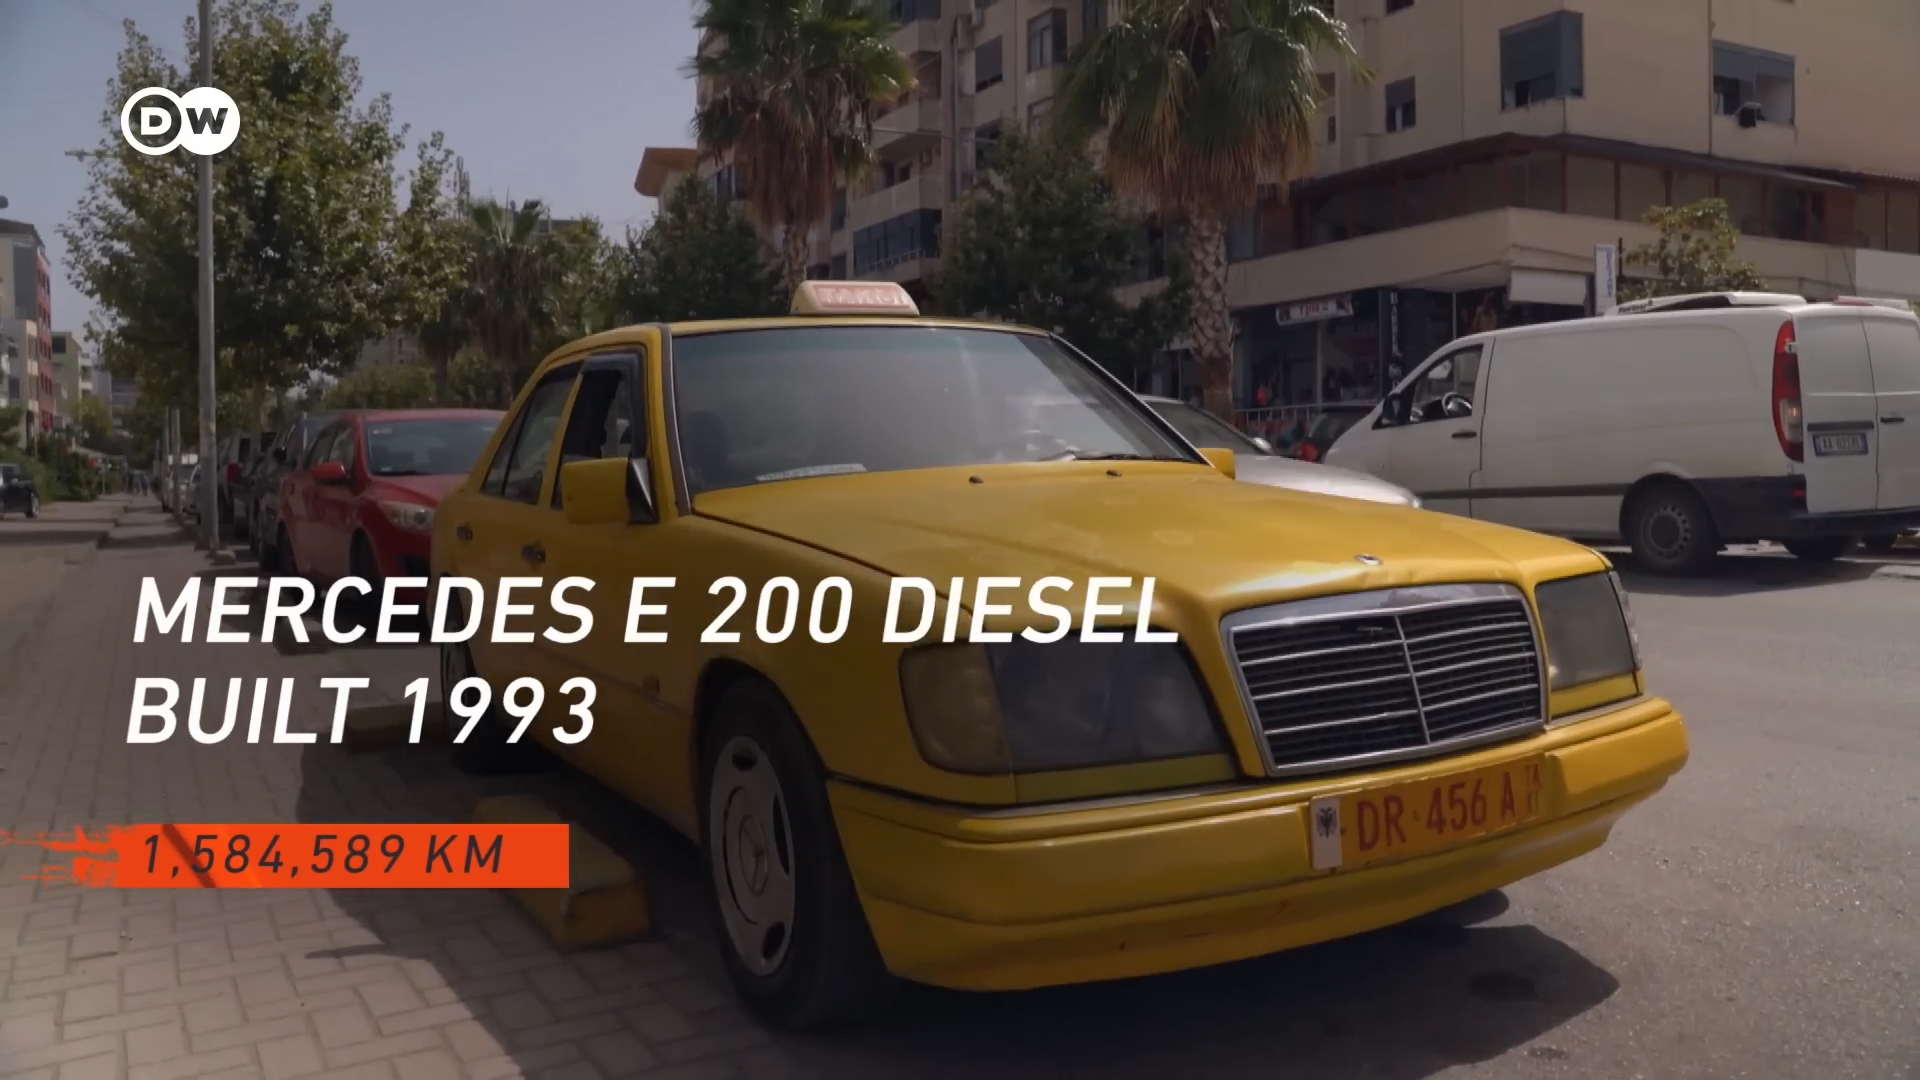 Таксист проехал 8000 км. Такси на миллион. Мерседес за 30 миллионов. Мерседес 2022 года. Mercedes 1993 года в алюминиевом корпусе.